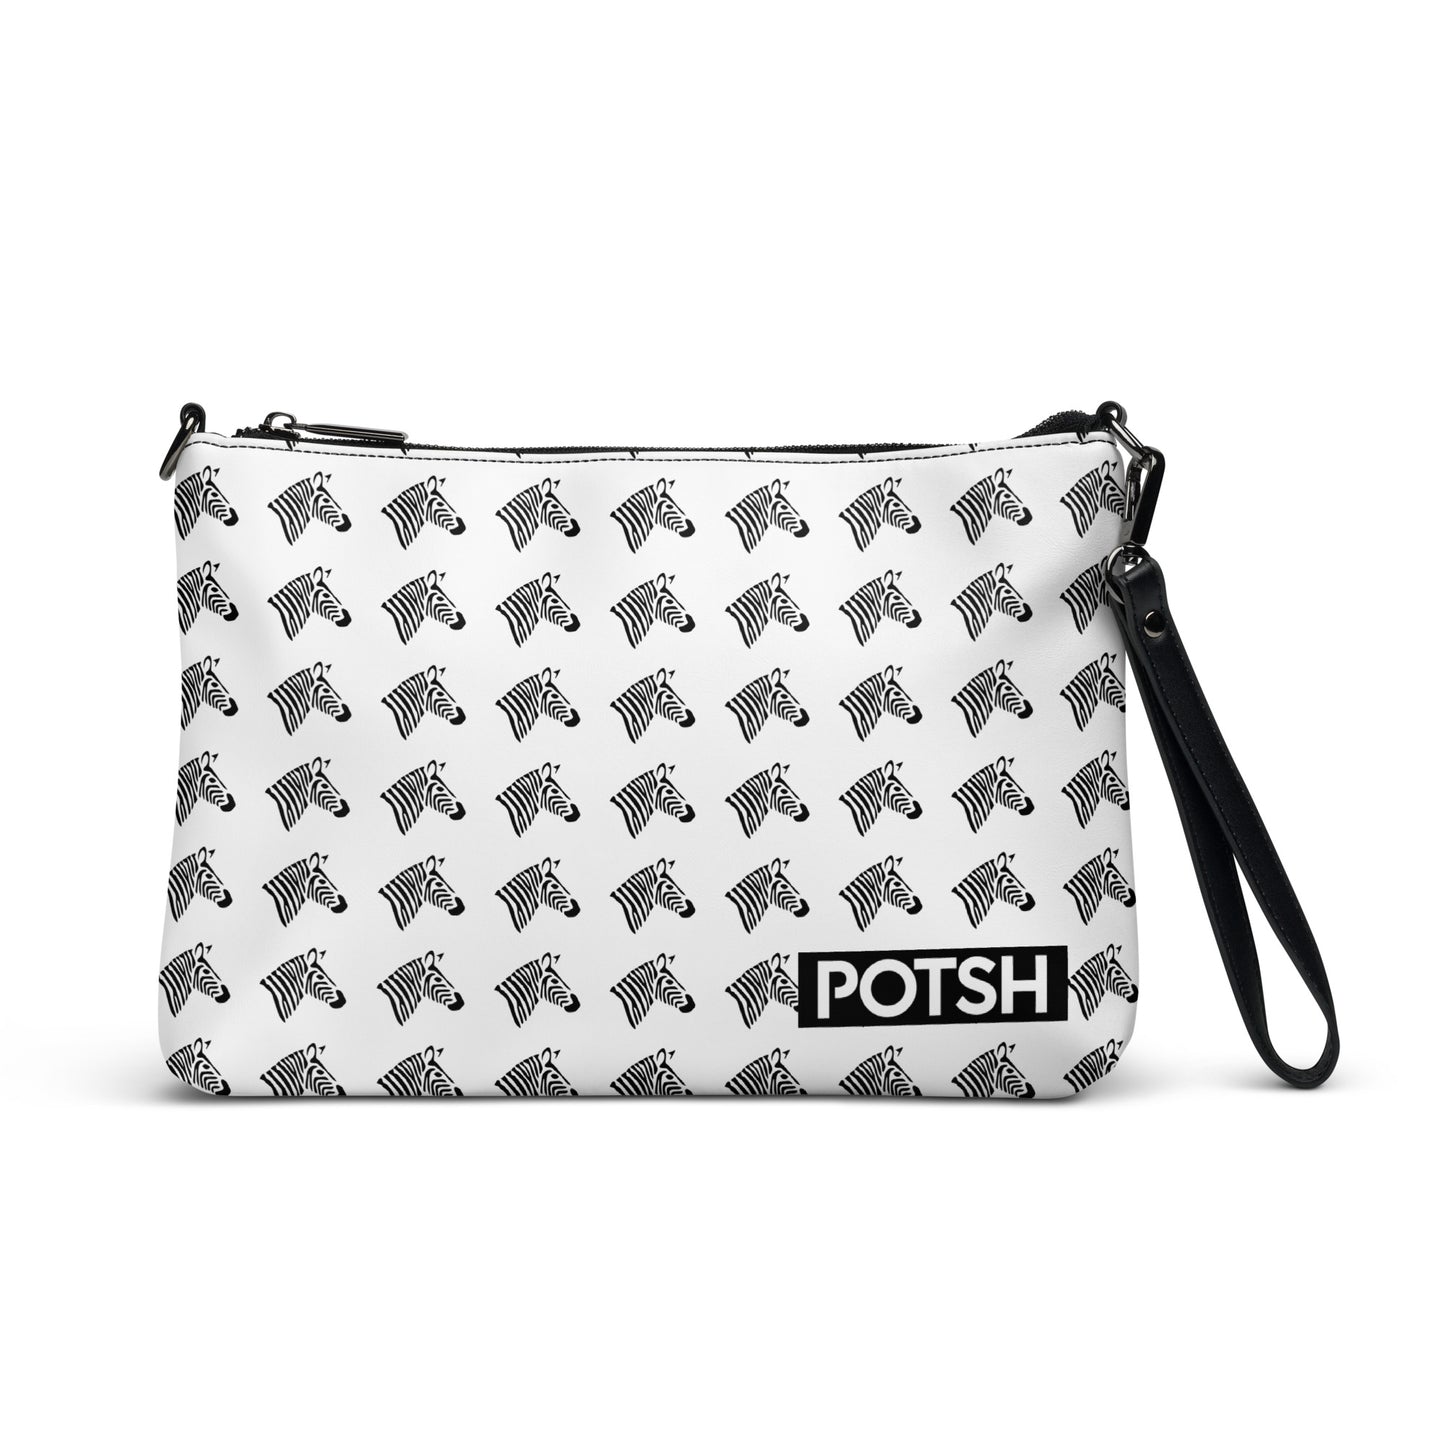 Leather Crossbody/Daily Pouch - Zebra Print